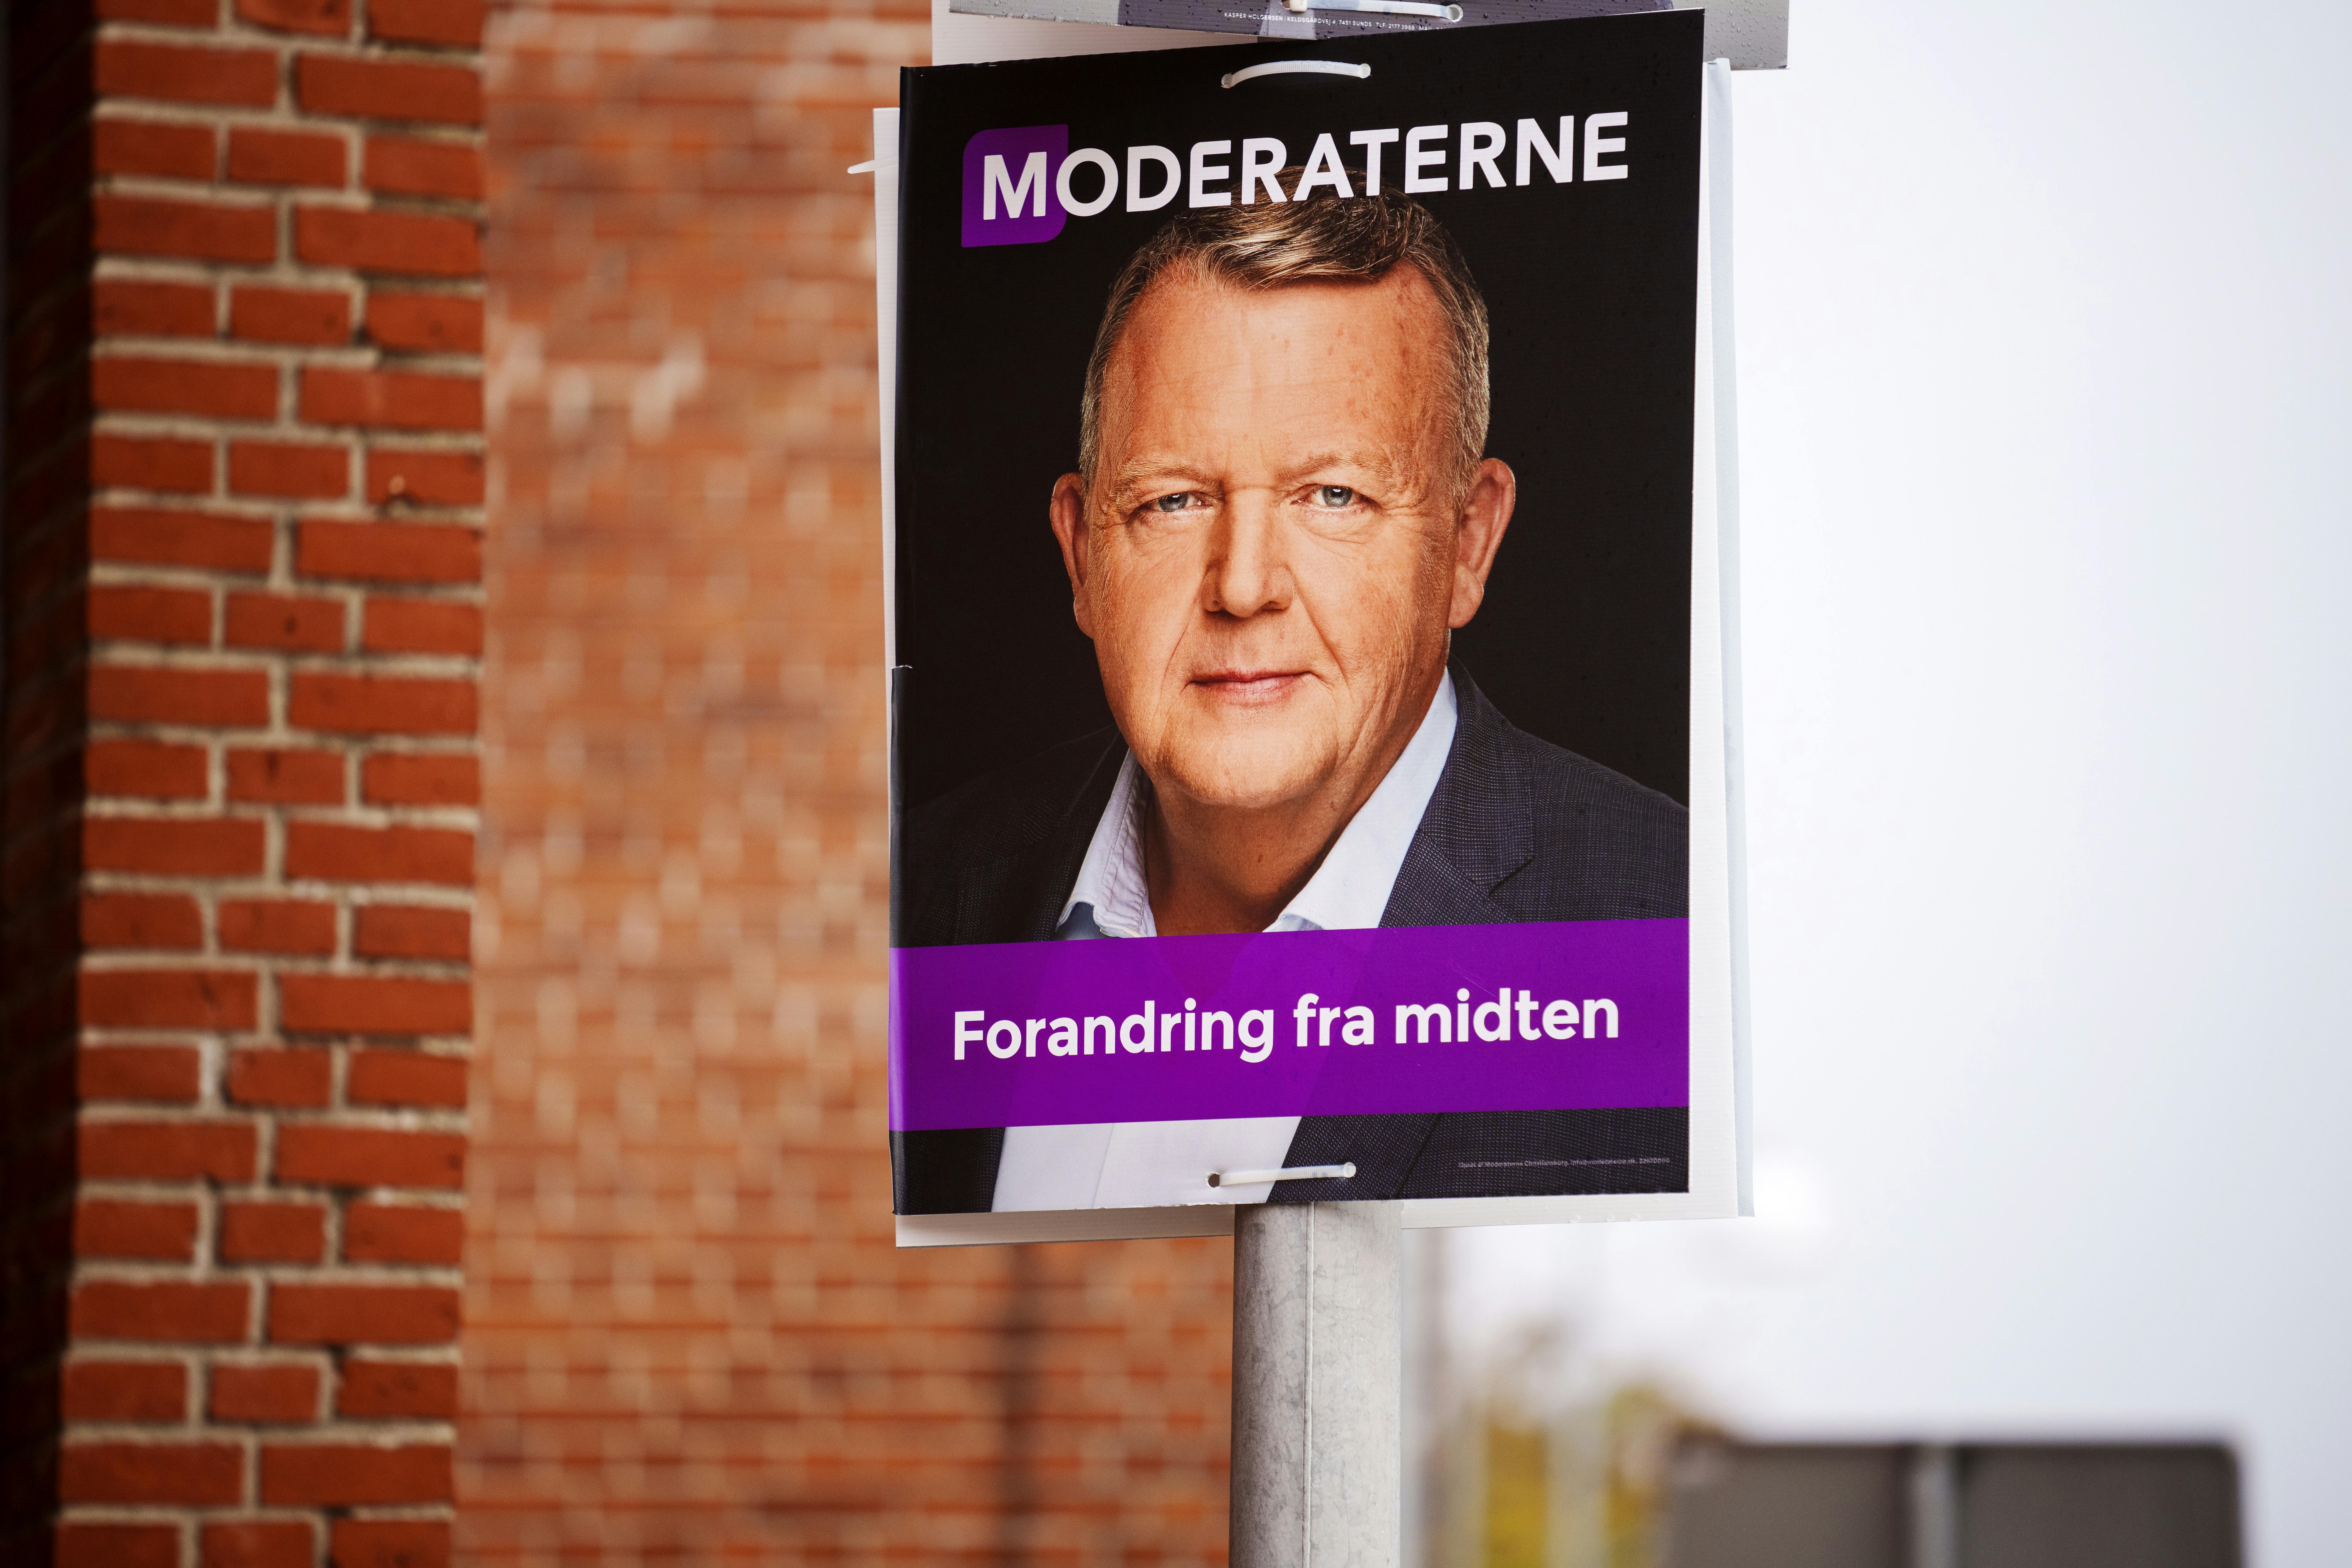 Valgplakat for Lars Løkke Rasmussen fra Moderaterne i Herning torsdag den 13. oktober 2022.&nbsp;